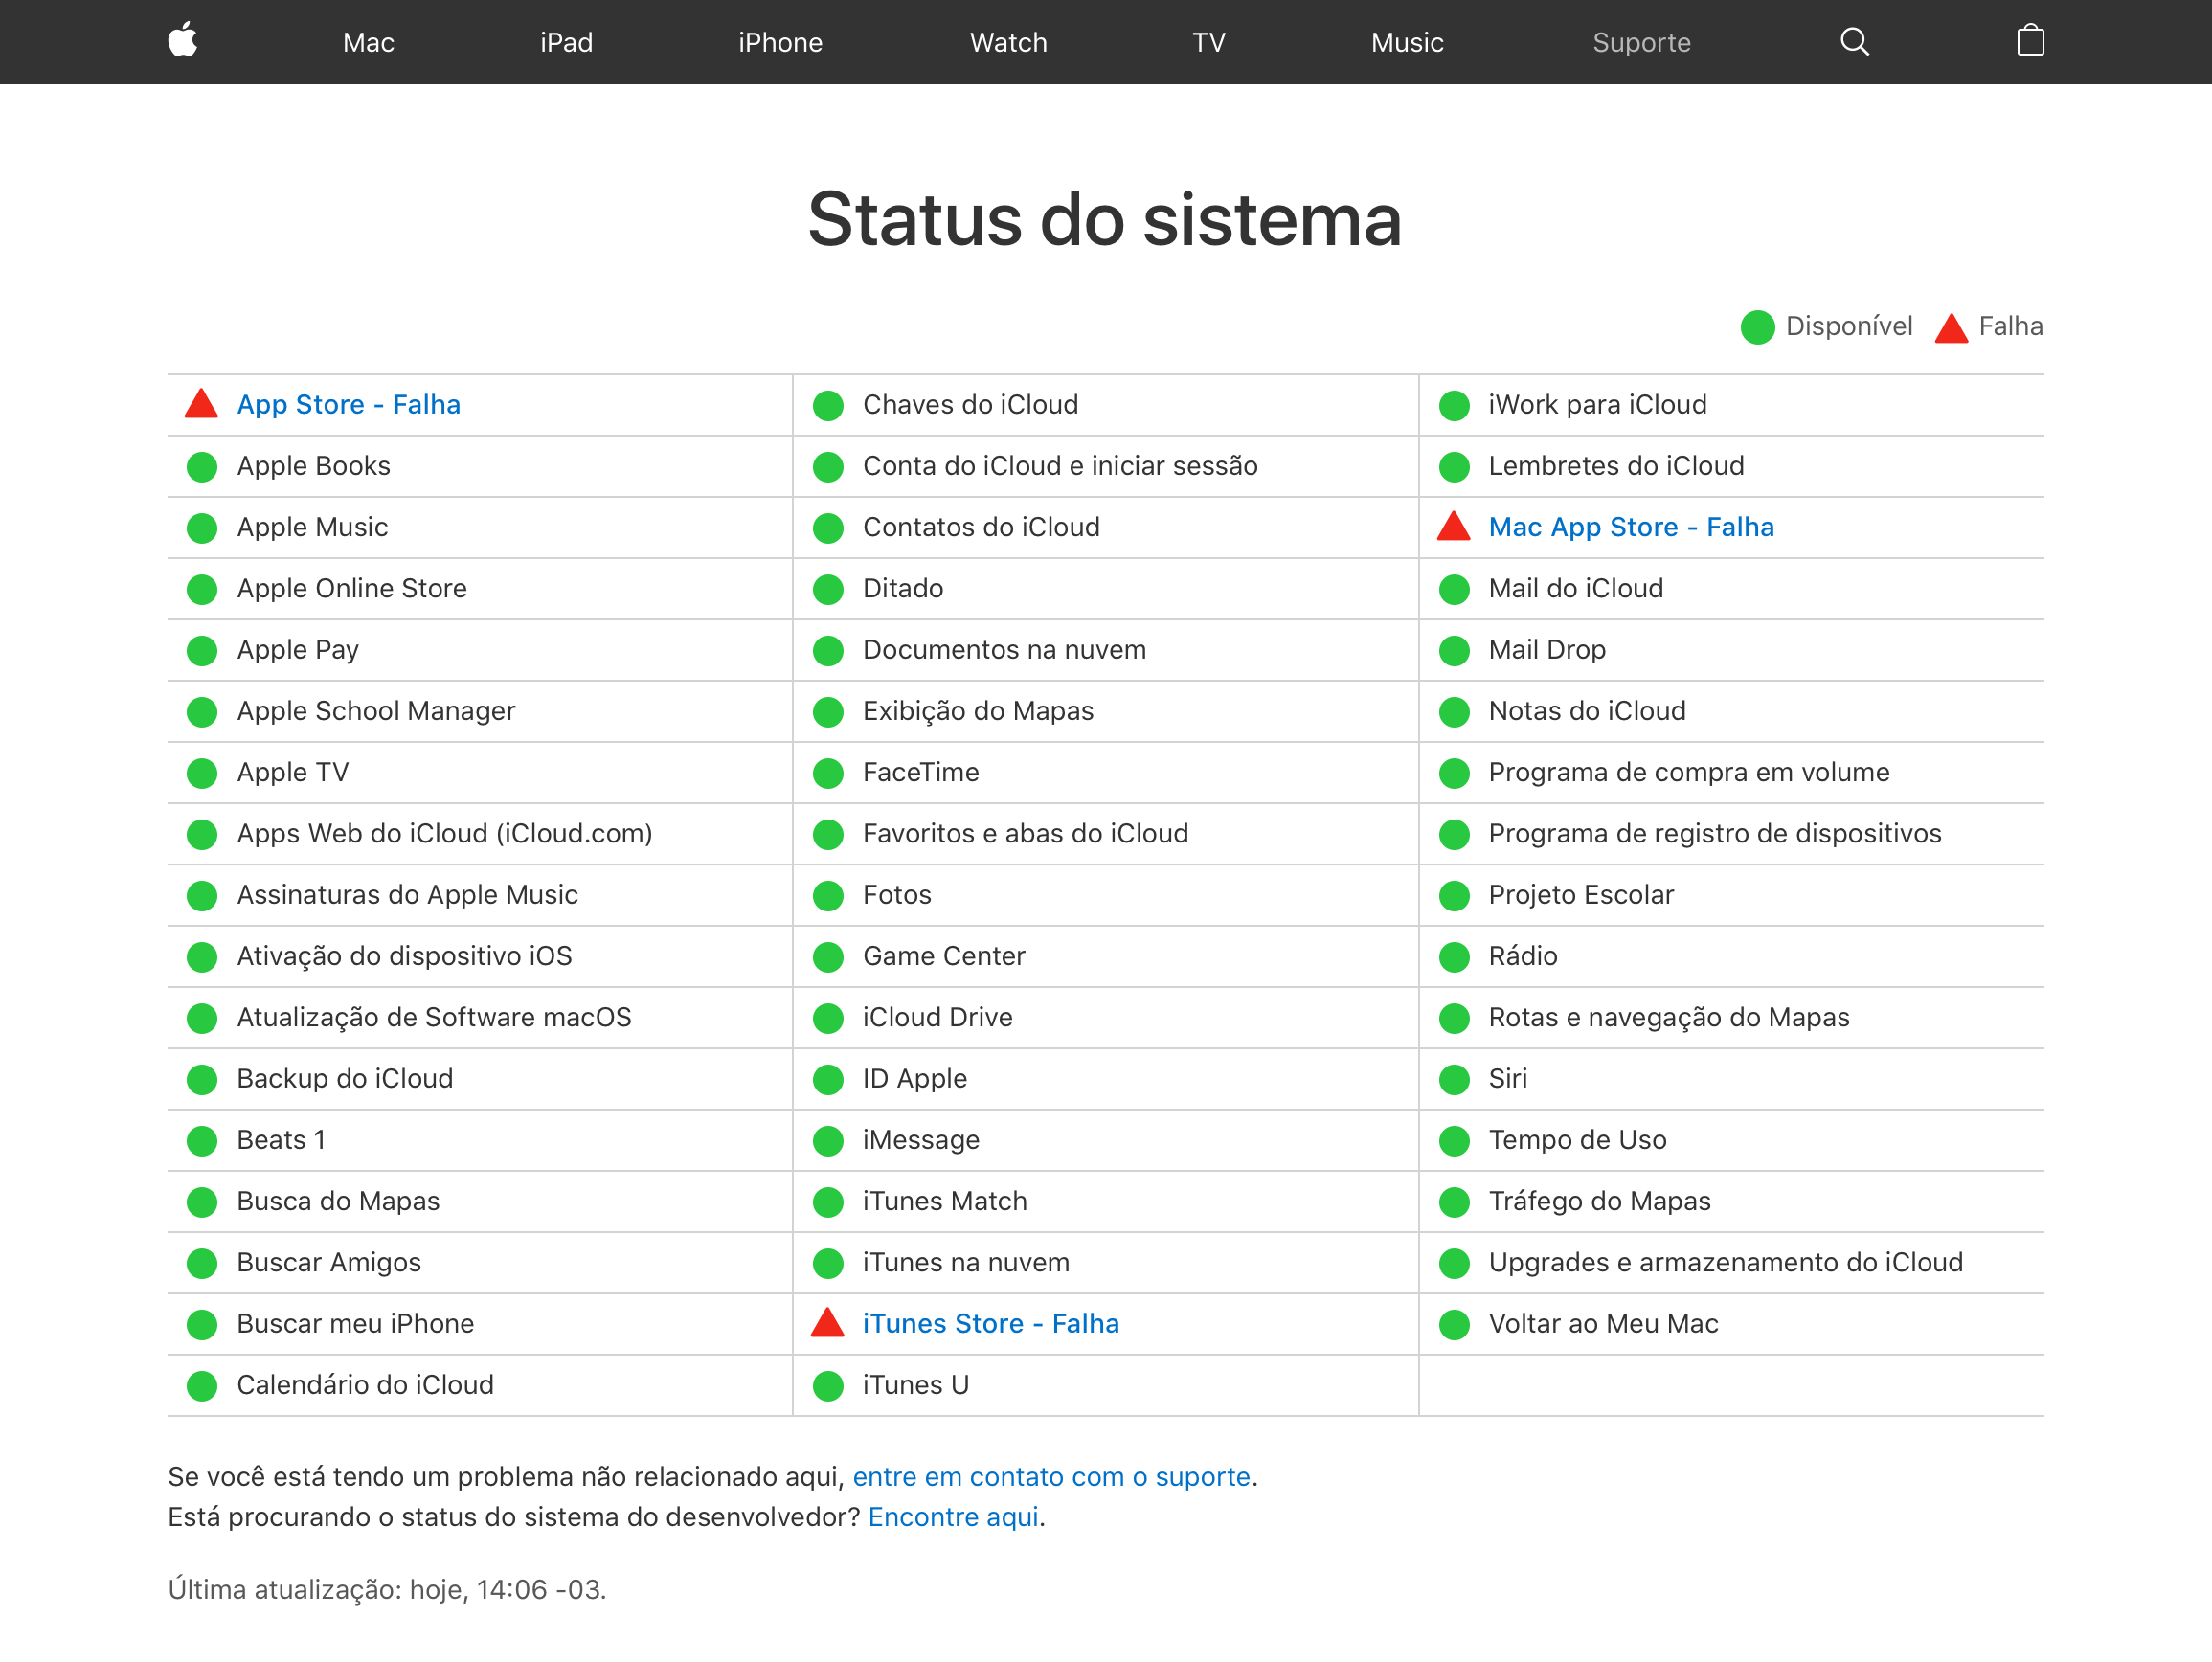 Apple services failed